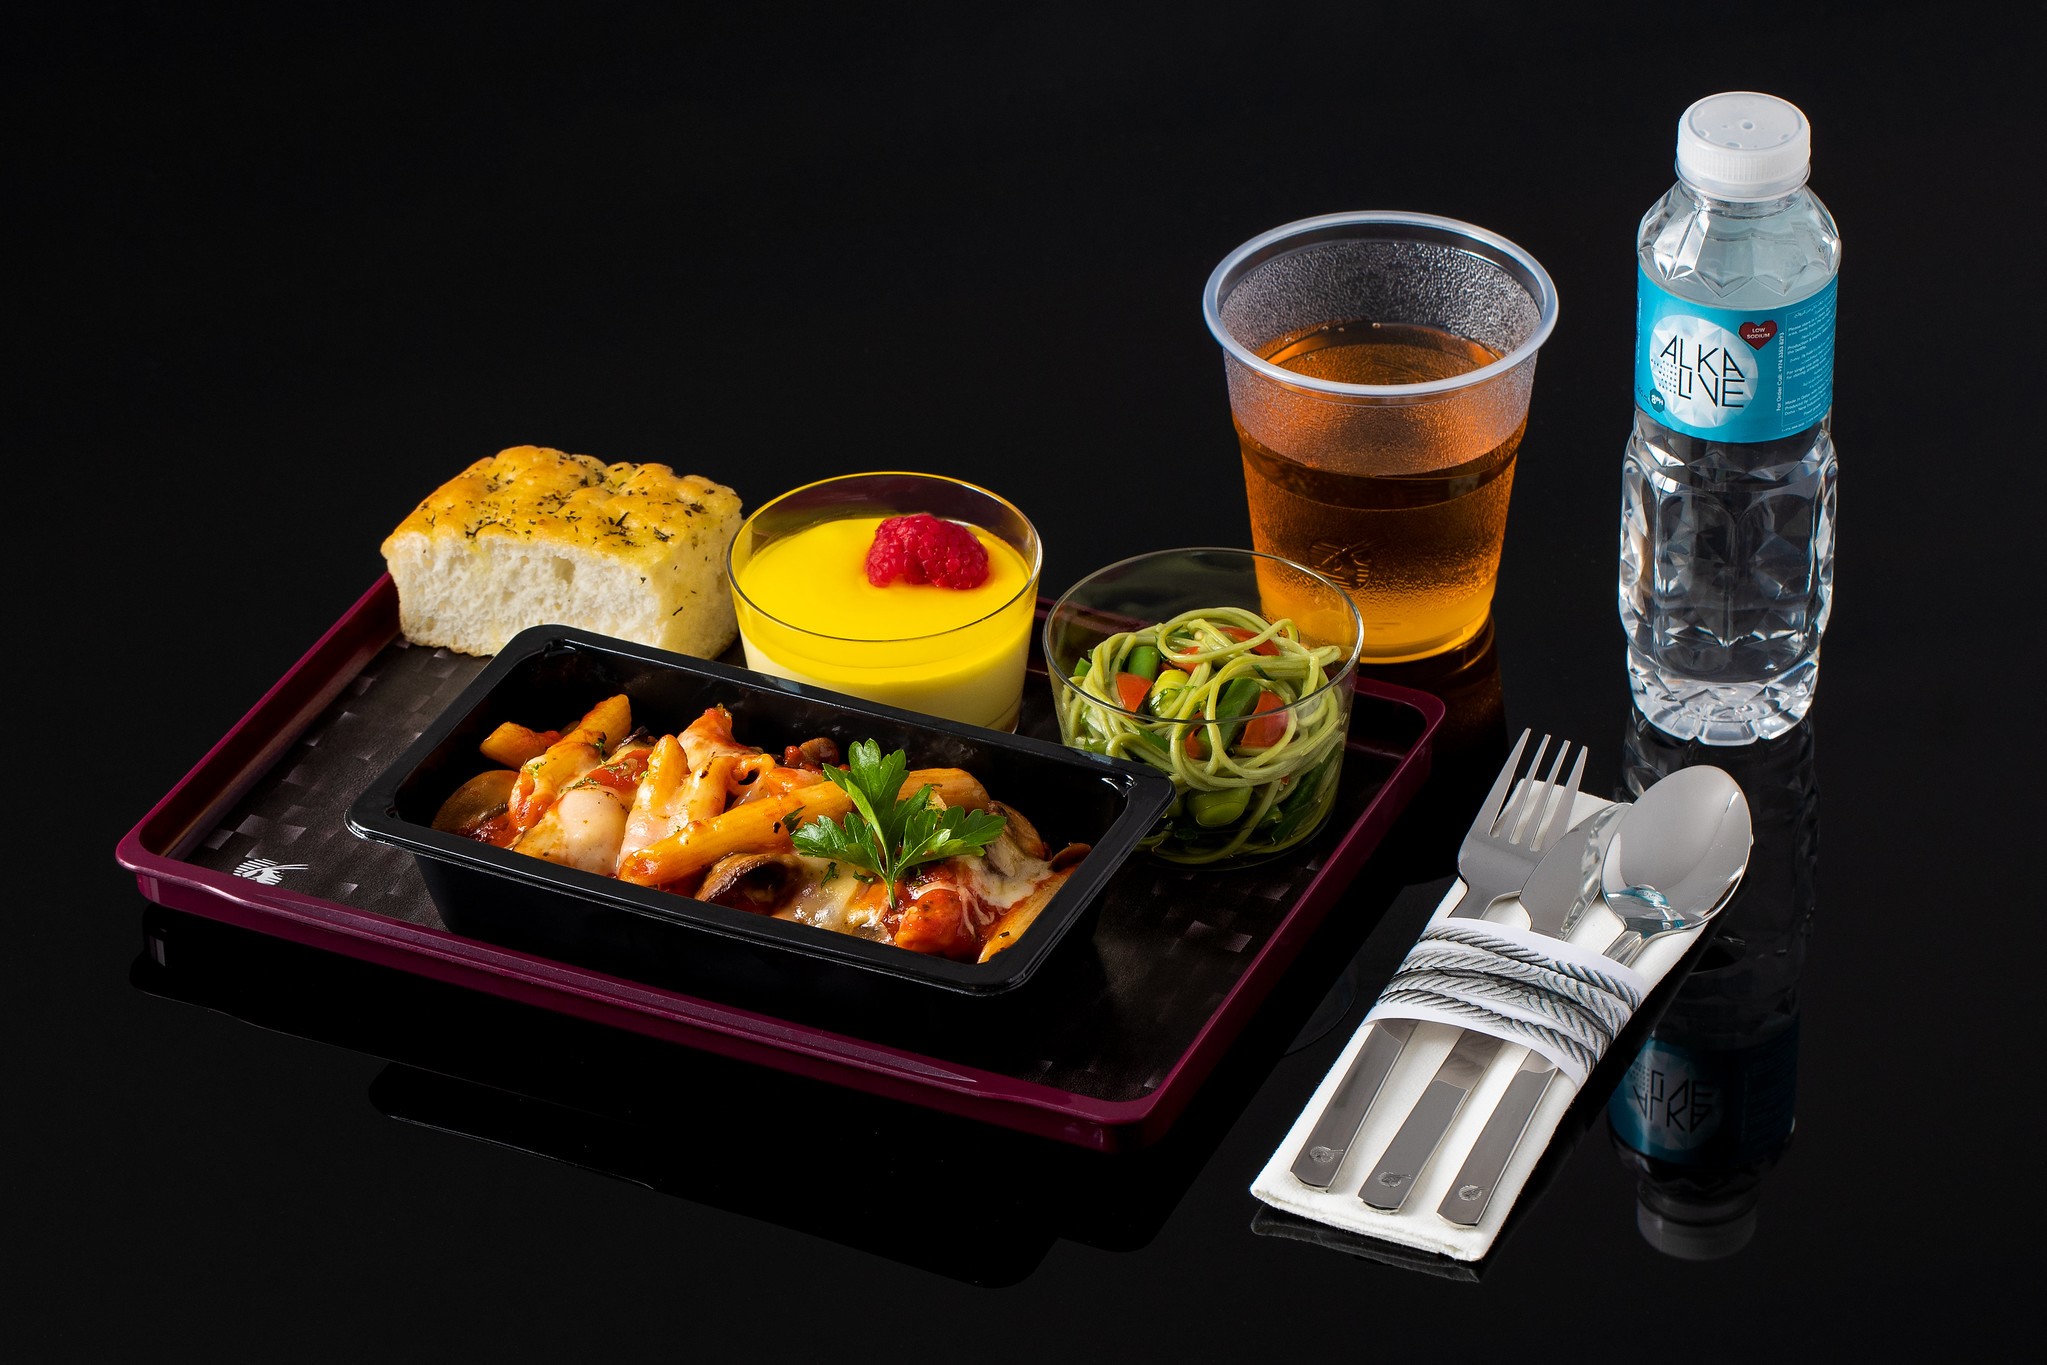 卡塔尔航空推出全新经济舱机上餐食服务“Quisine” 升级经济舱乘客的旅行体验